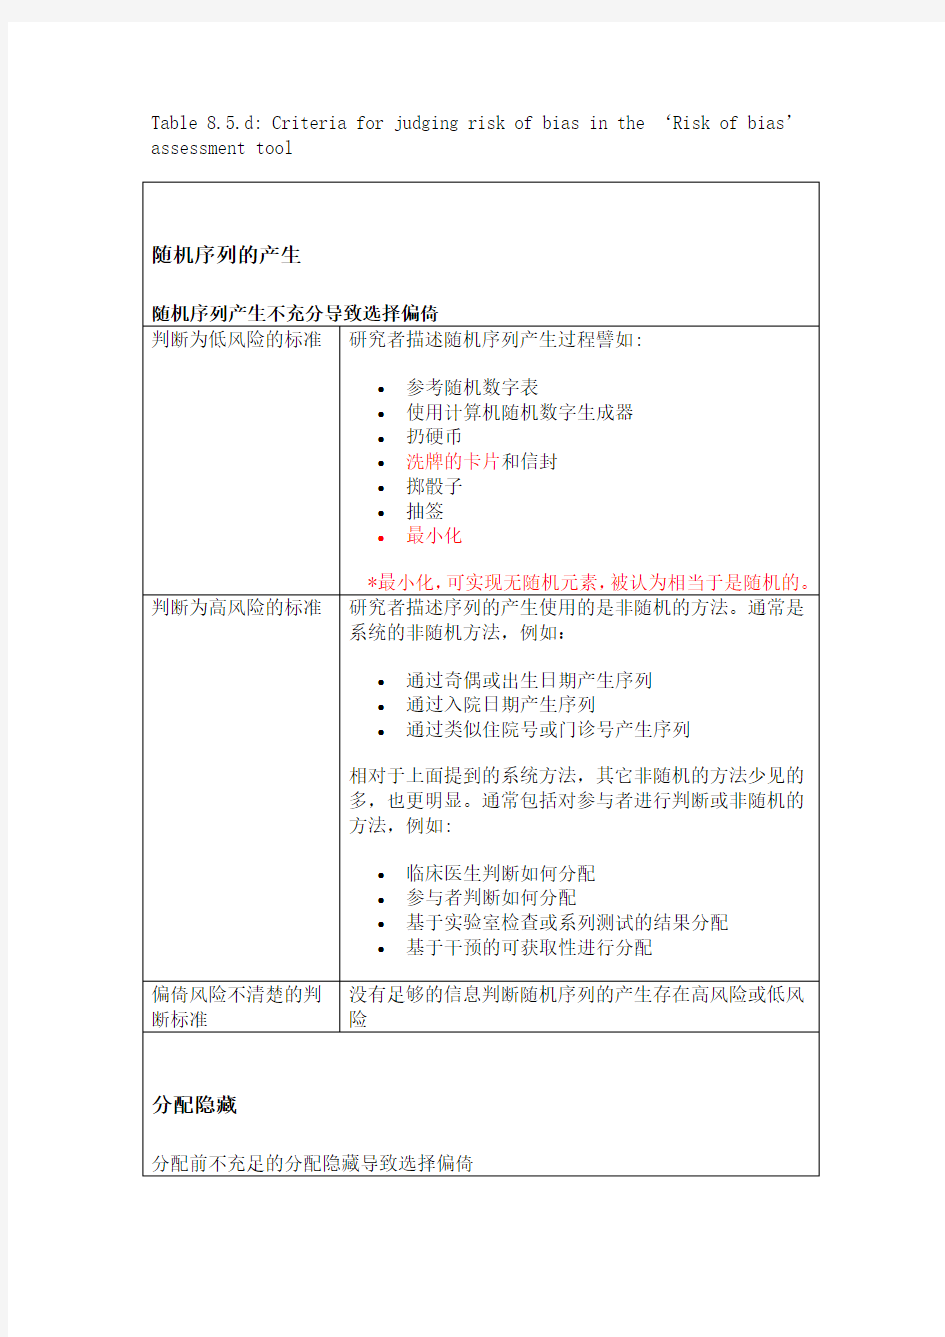 cochrane纳入的RCT文献质量评价中文版